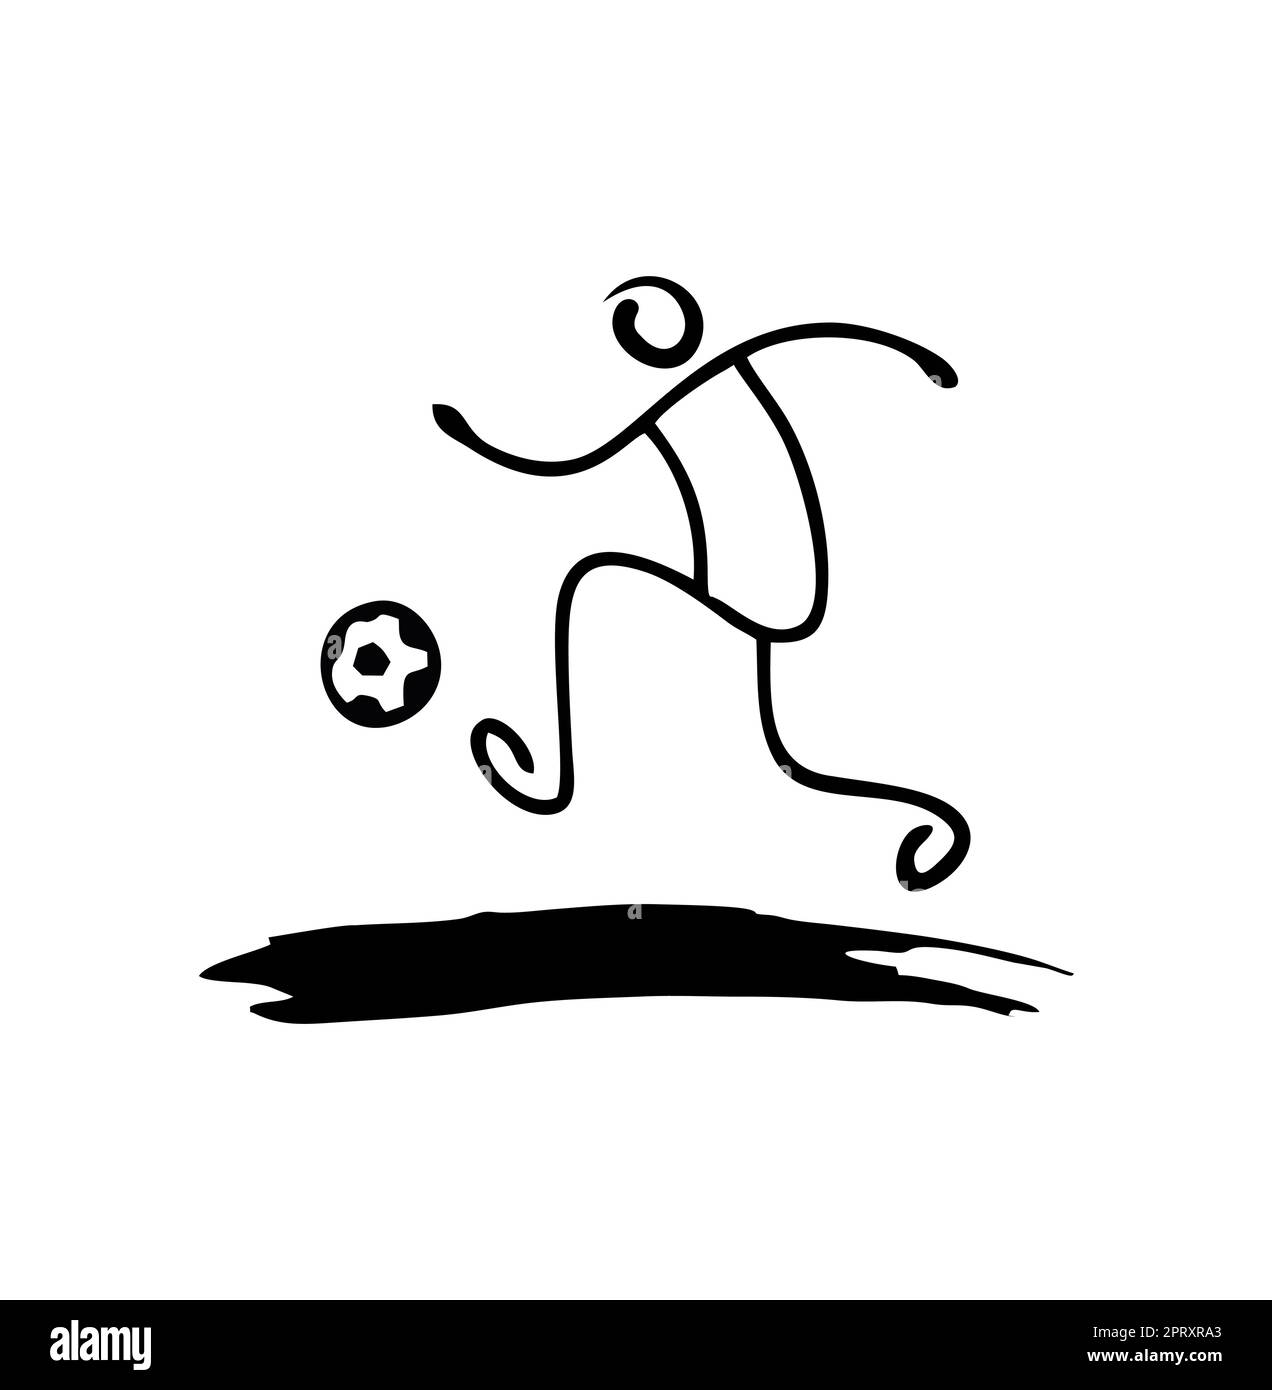 Affiche du logo de la base de football en forme de dribbling de stickman Illustration de Vecteur